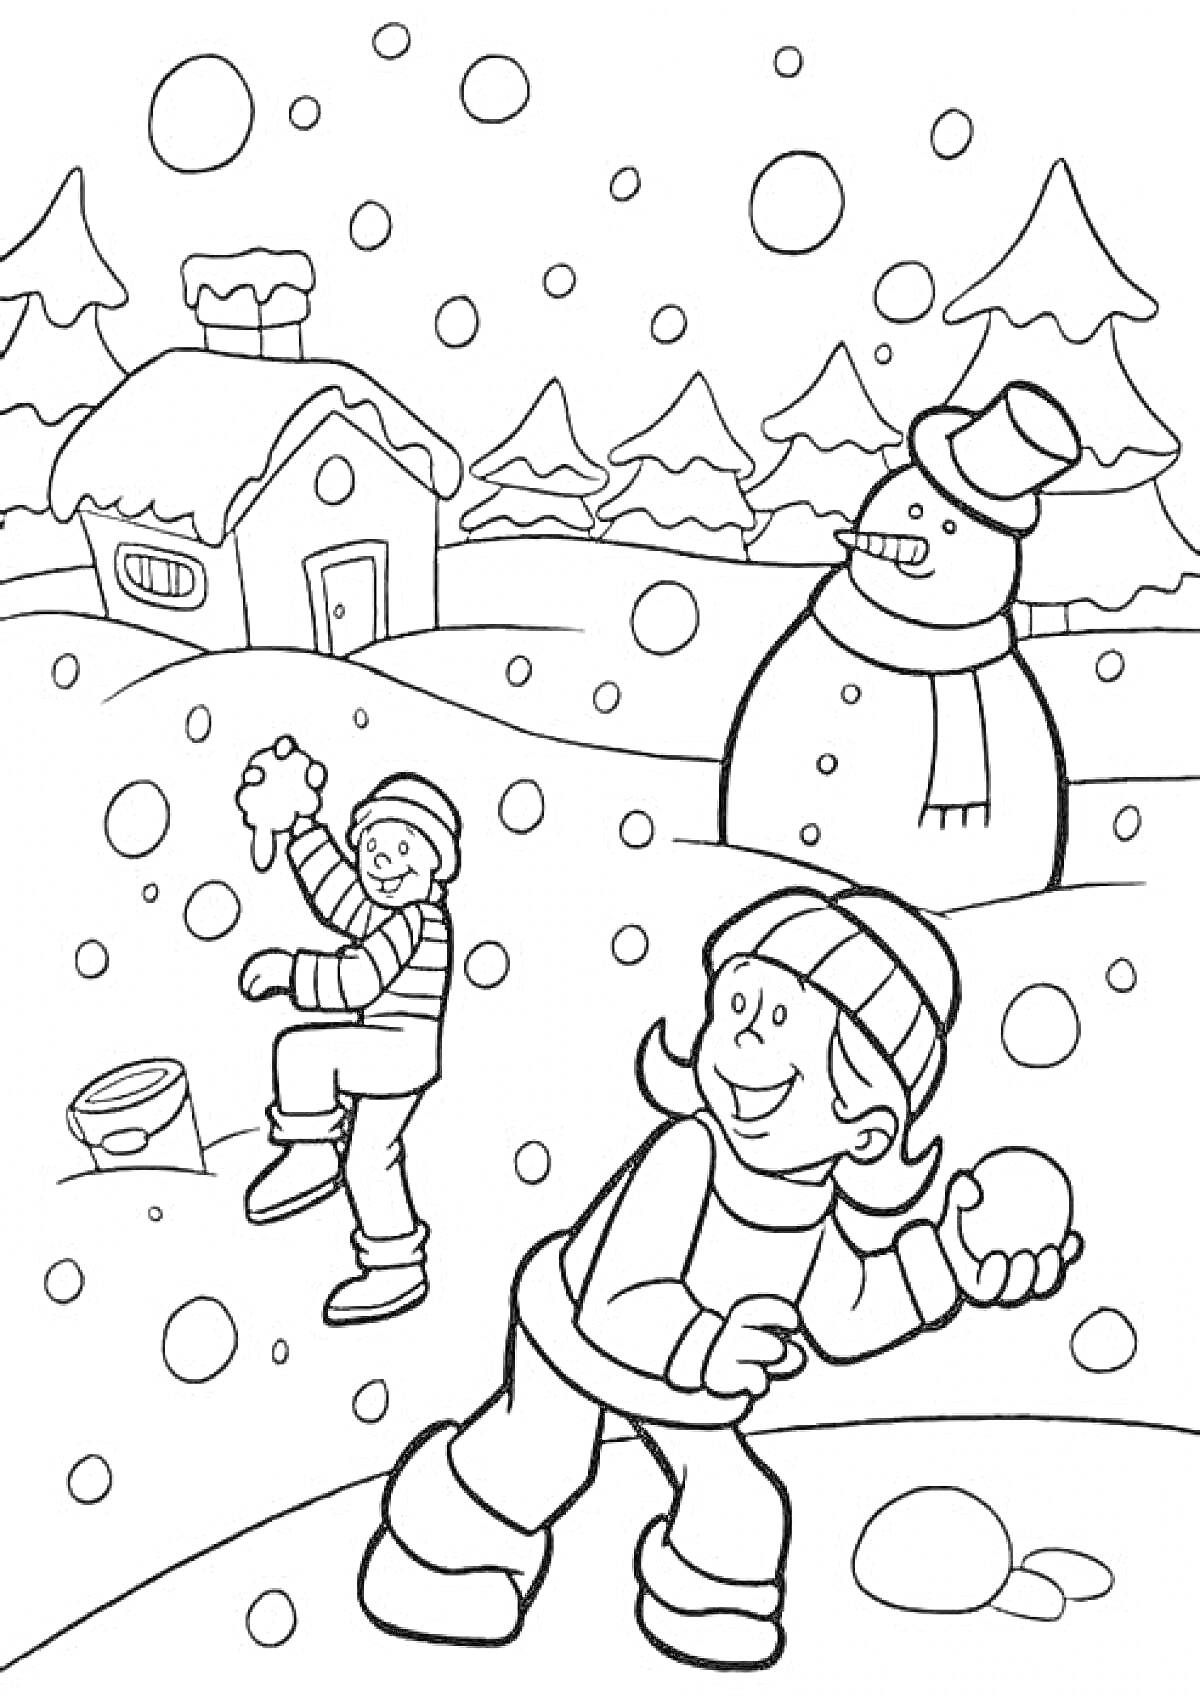 Дети играют в снежки на фоне зимнего пейзажа с домиком и снеговиком